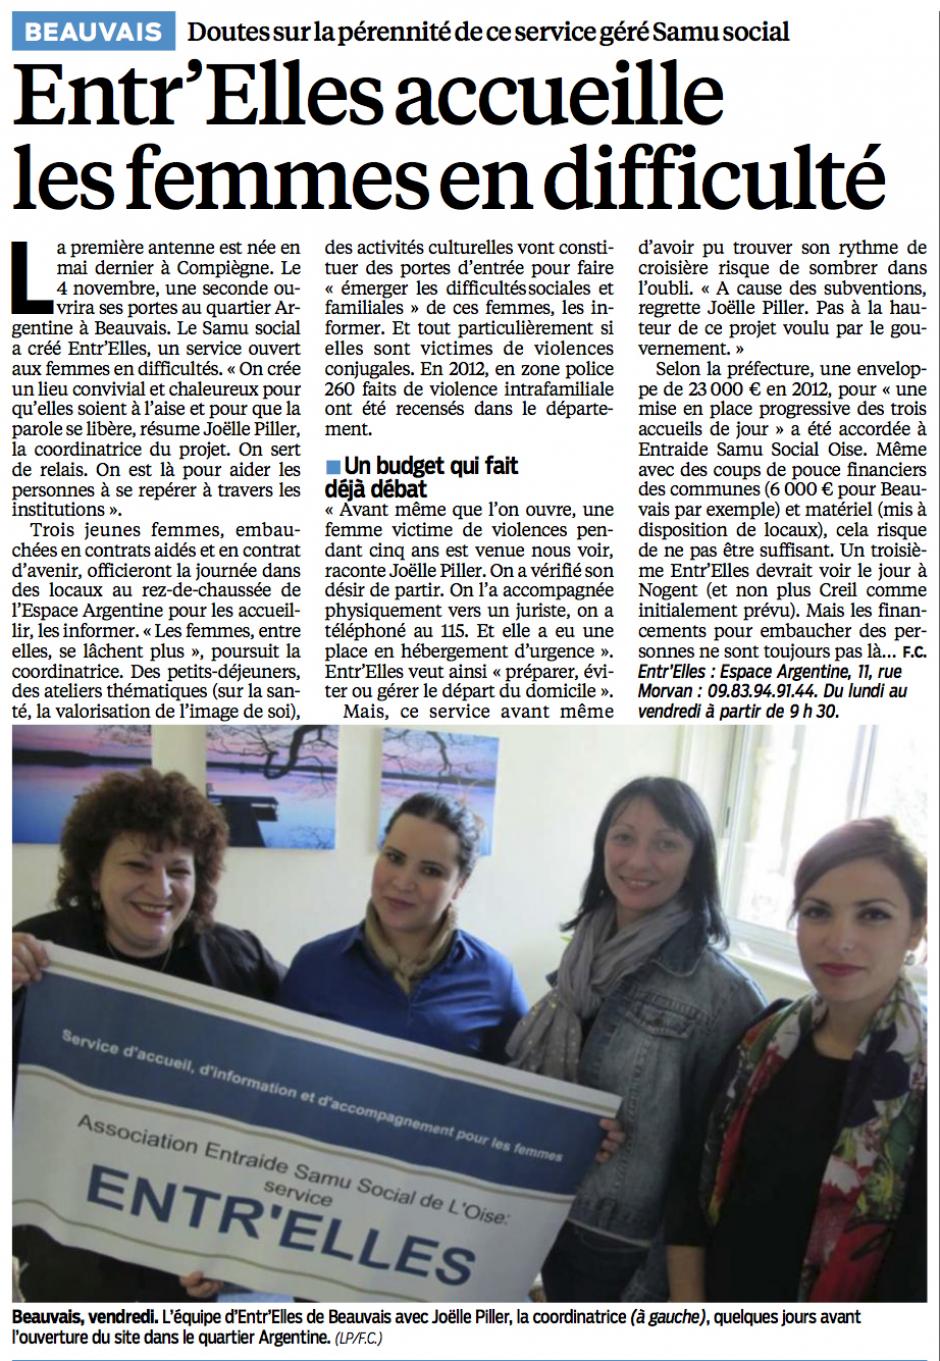 20131023-LeP-Beauvais-Entr'Elles accueillent les femmes en difficulté